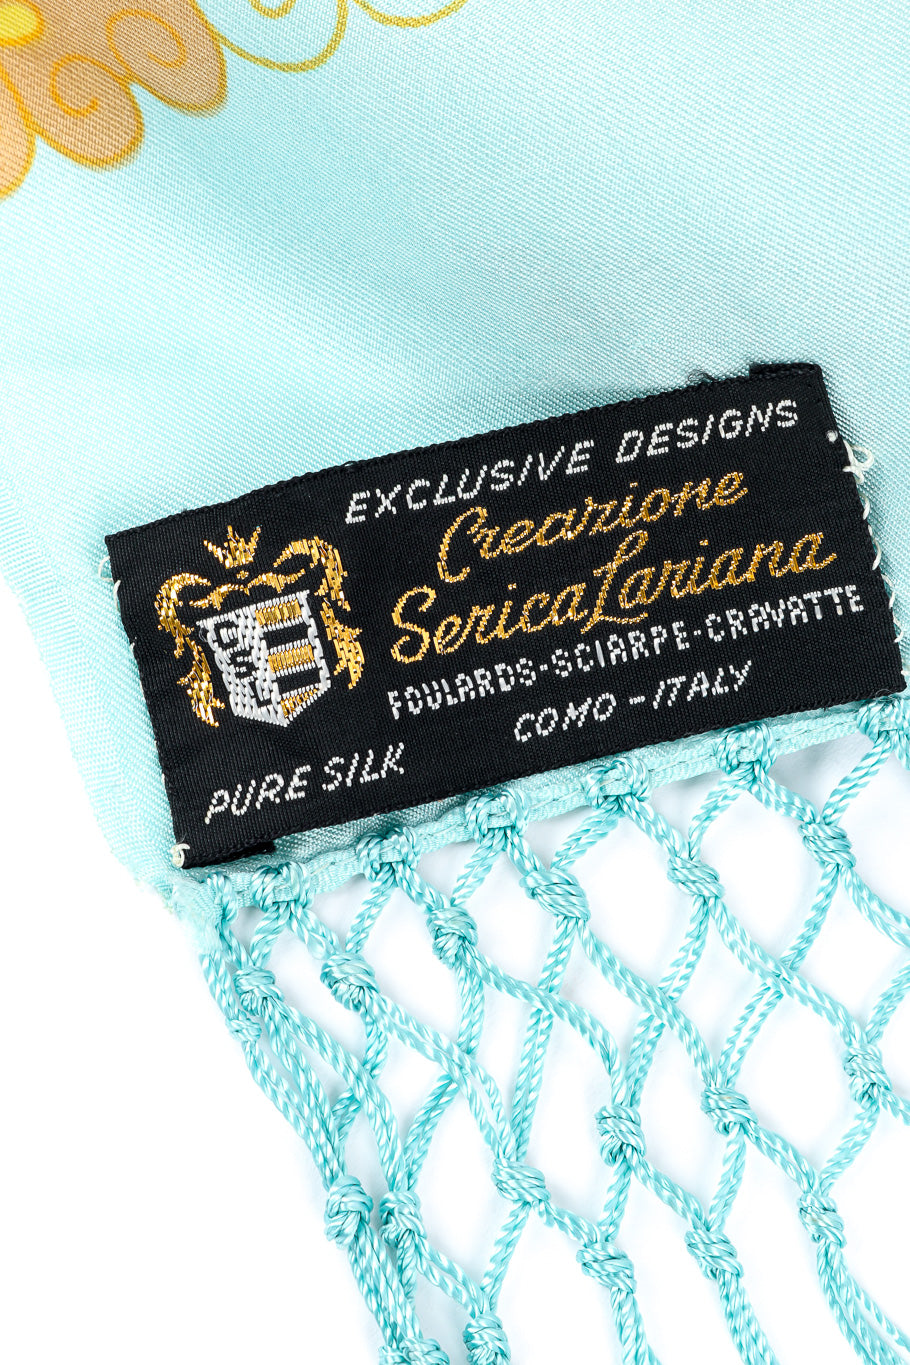 Creazione Serica Lariana bright floral fringe shawl designer label @recessla